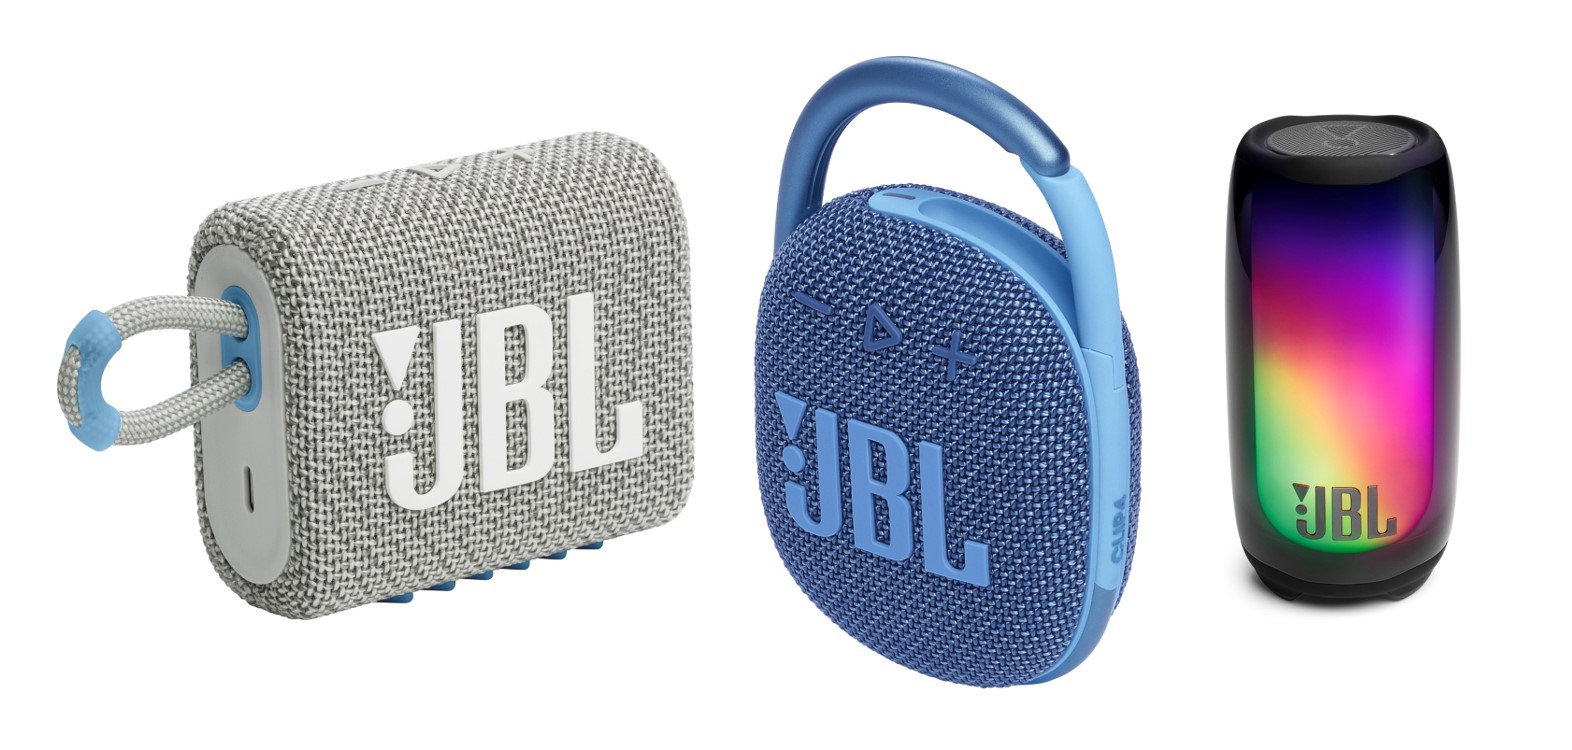 Altavoces JBL Go 3 Eco, Clip 4 Eco y Pulse 5  fueron presentados en la feria de tecnología CES 2023. (JBL)